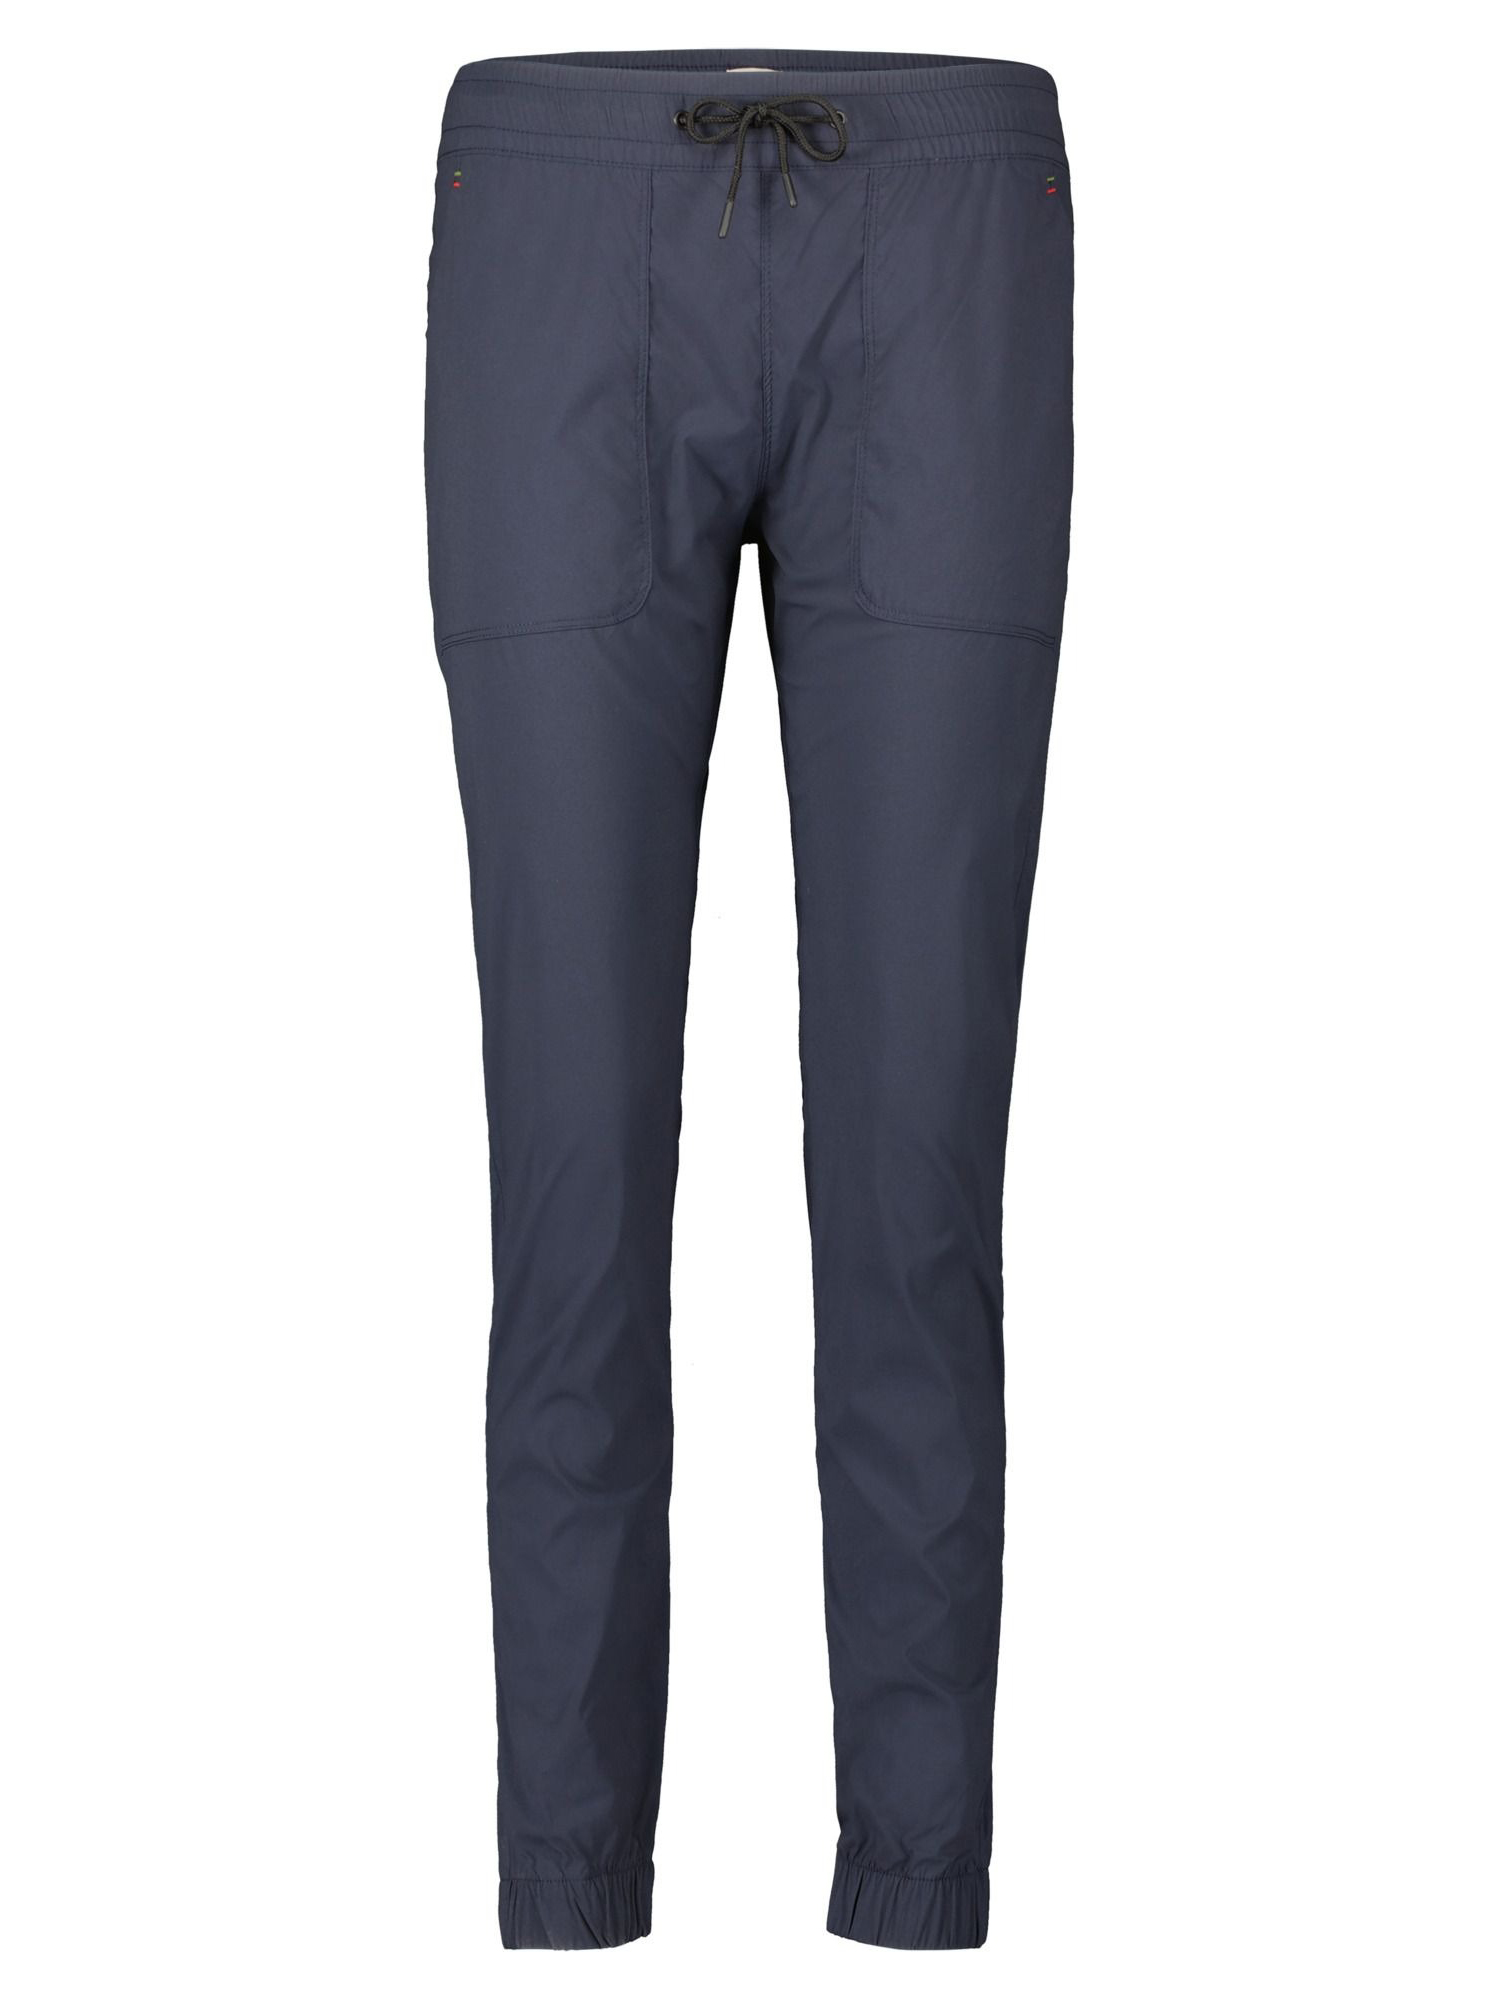 Спортивные брюки женские Dolomite Pants W's Corvara синие M